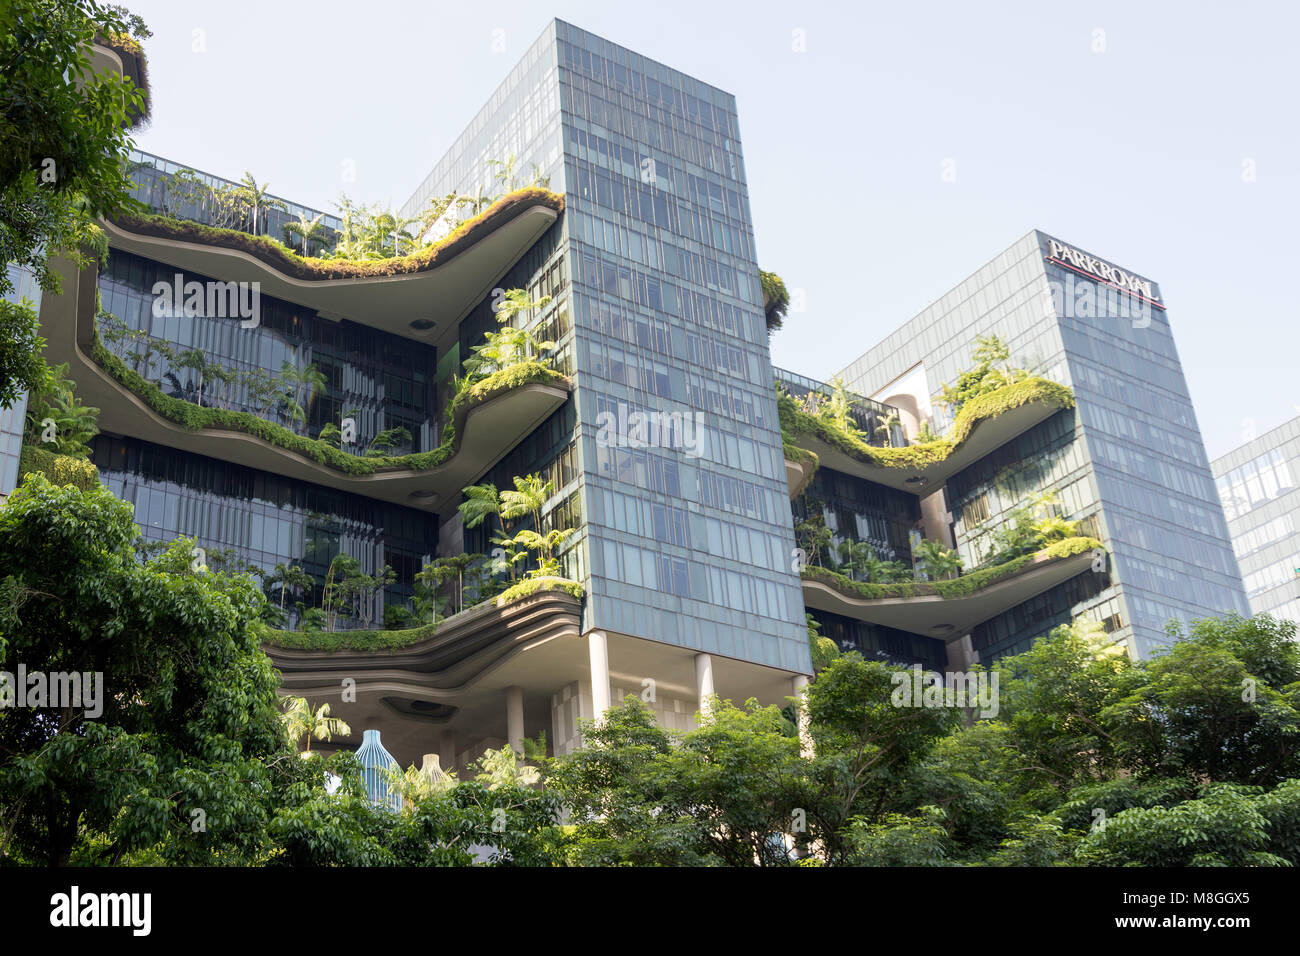 Vertikale Garten auf den Ebenen der Parkroyal auf Pickering Hotel, Obere Pickering Street, Chinatown, Outram District, Central Area, Singapur Stockfoto